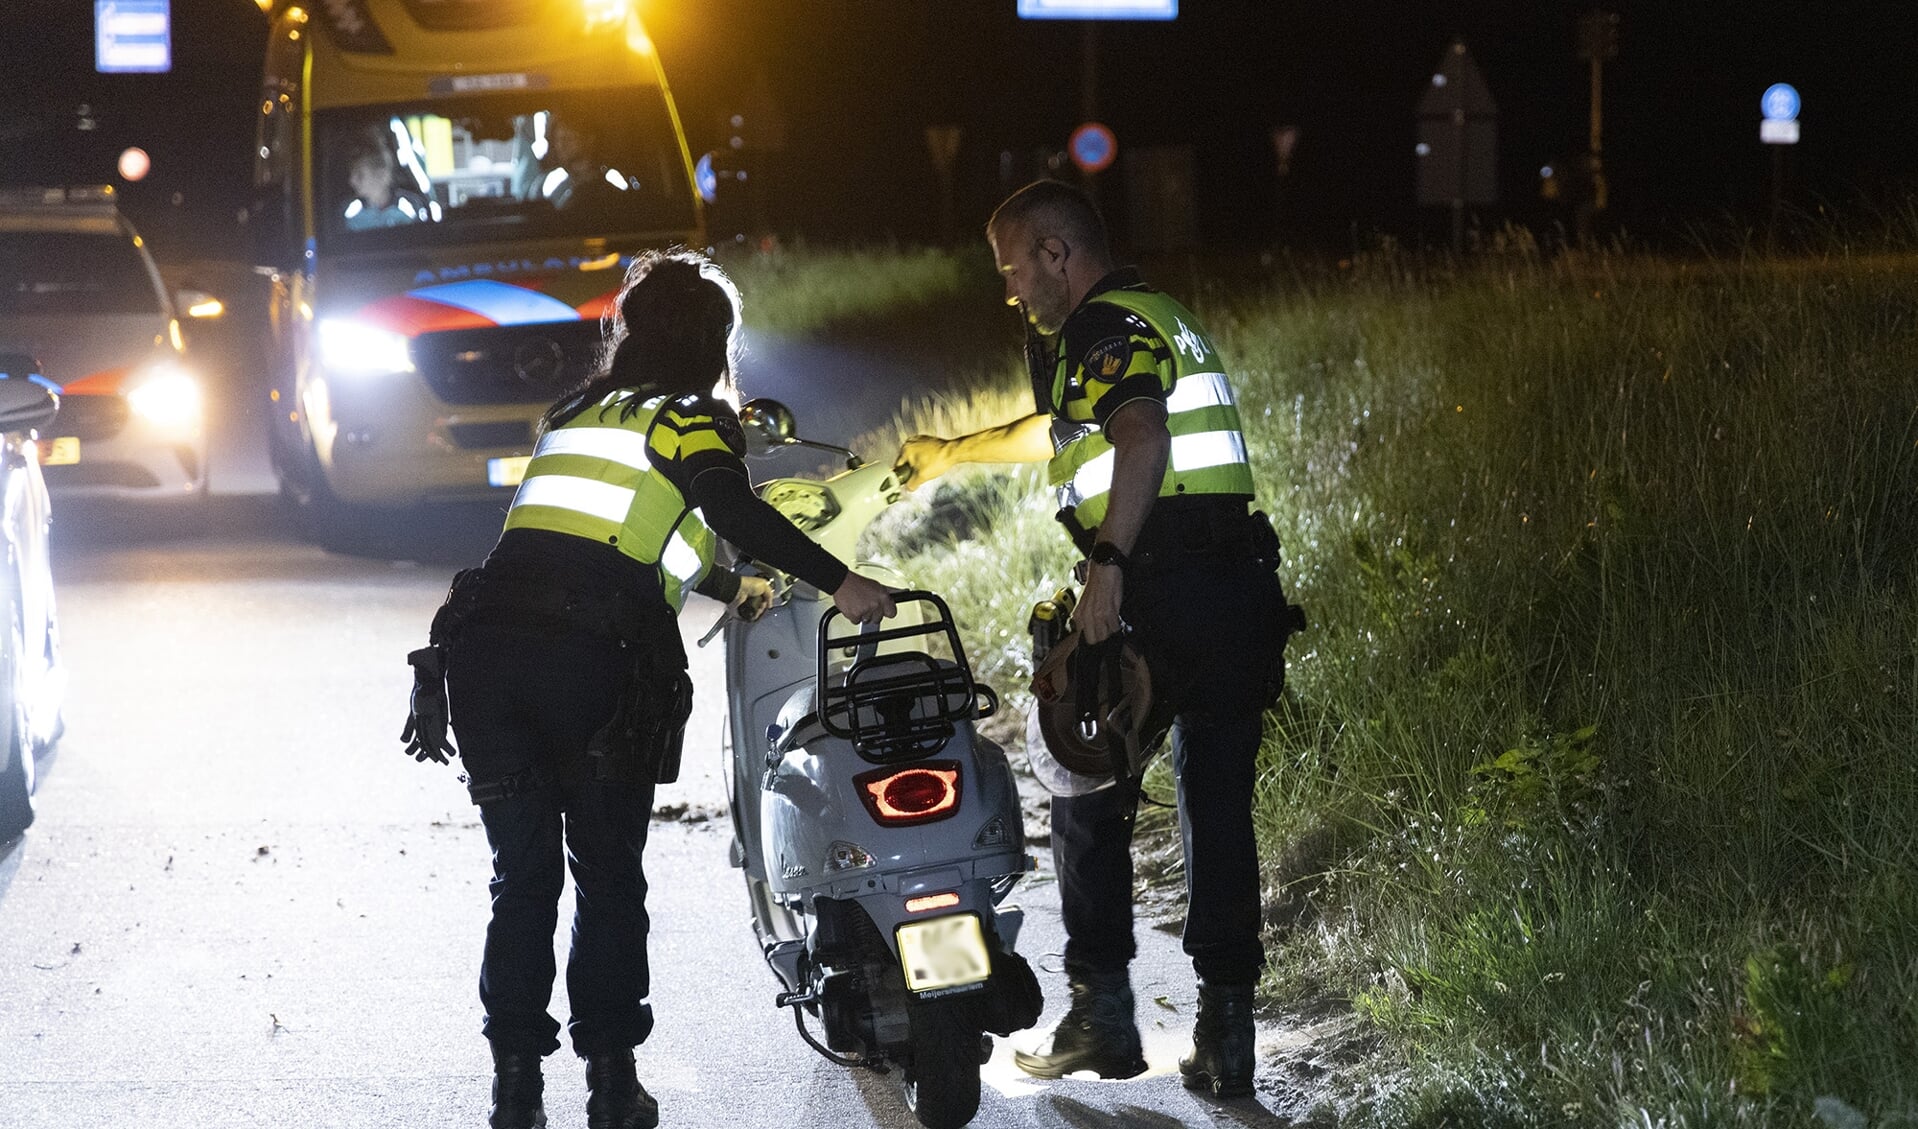 De politie heeft de beschadigde scooter afgevoerd